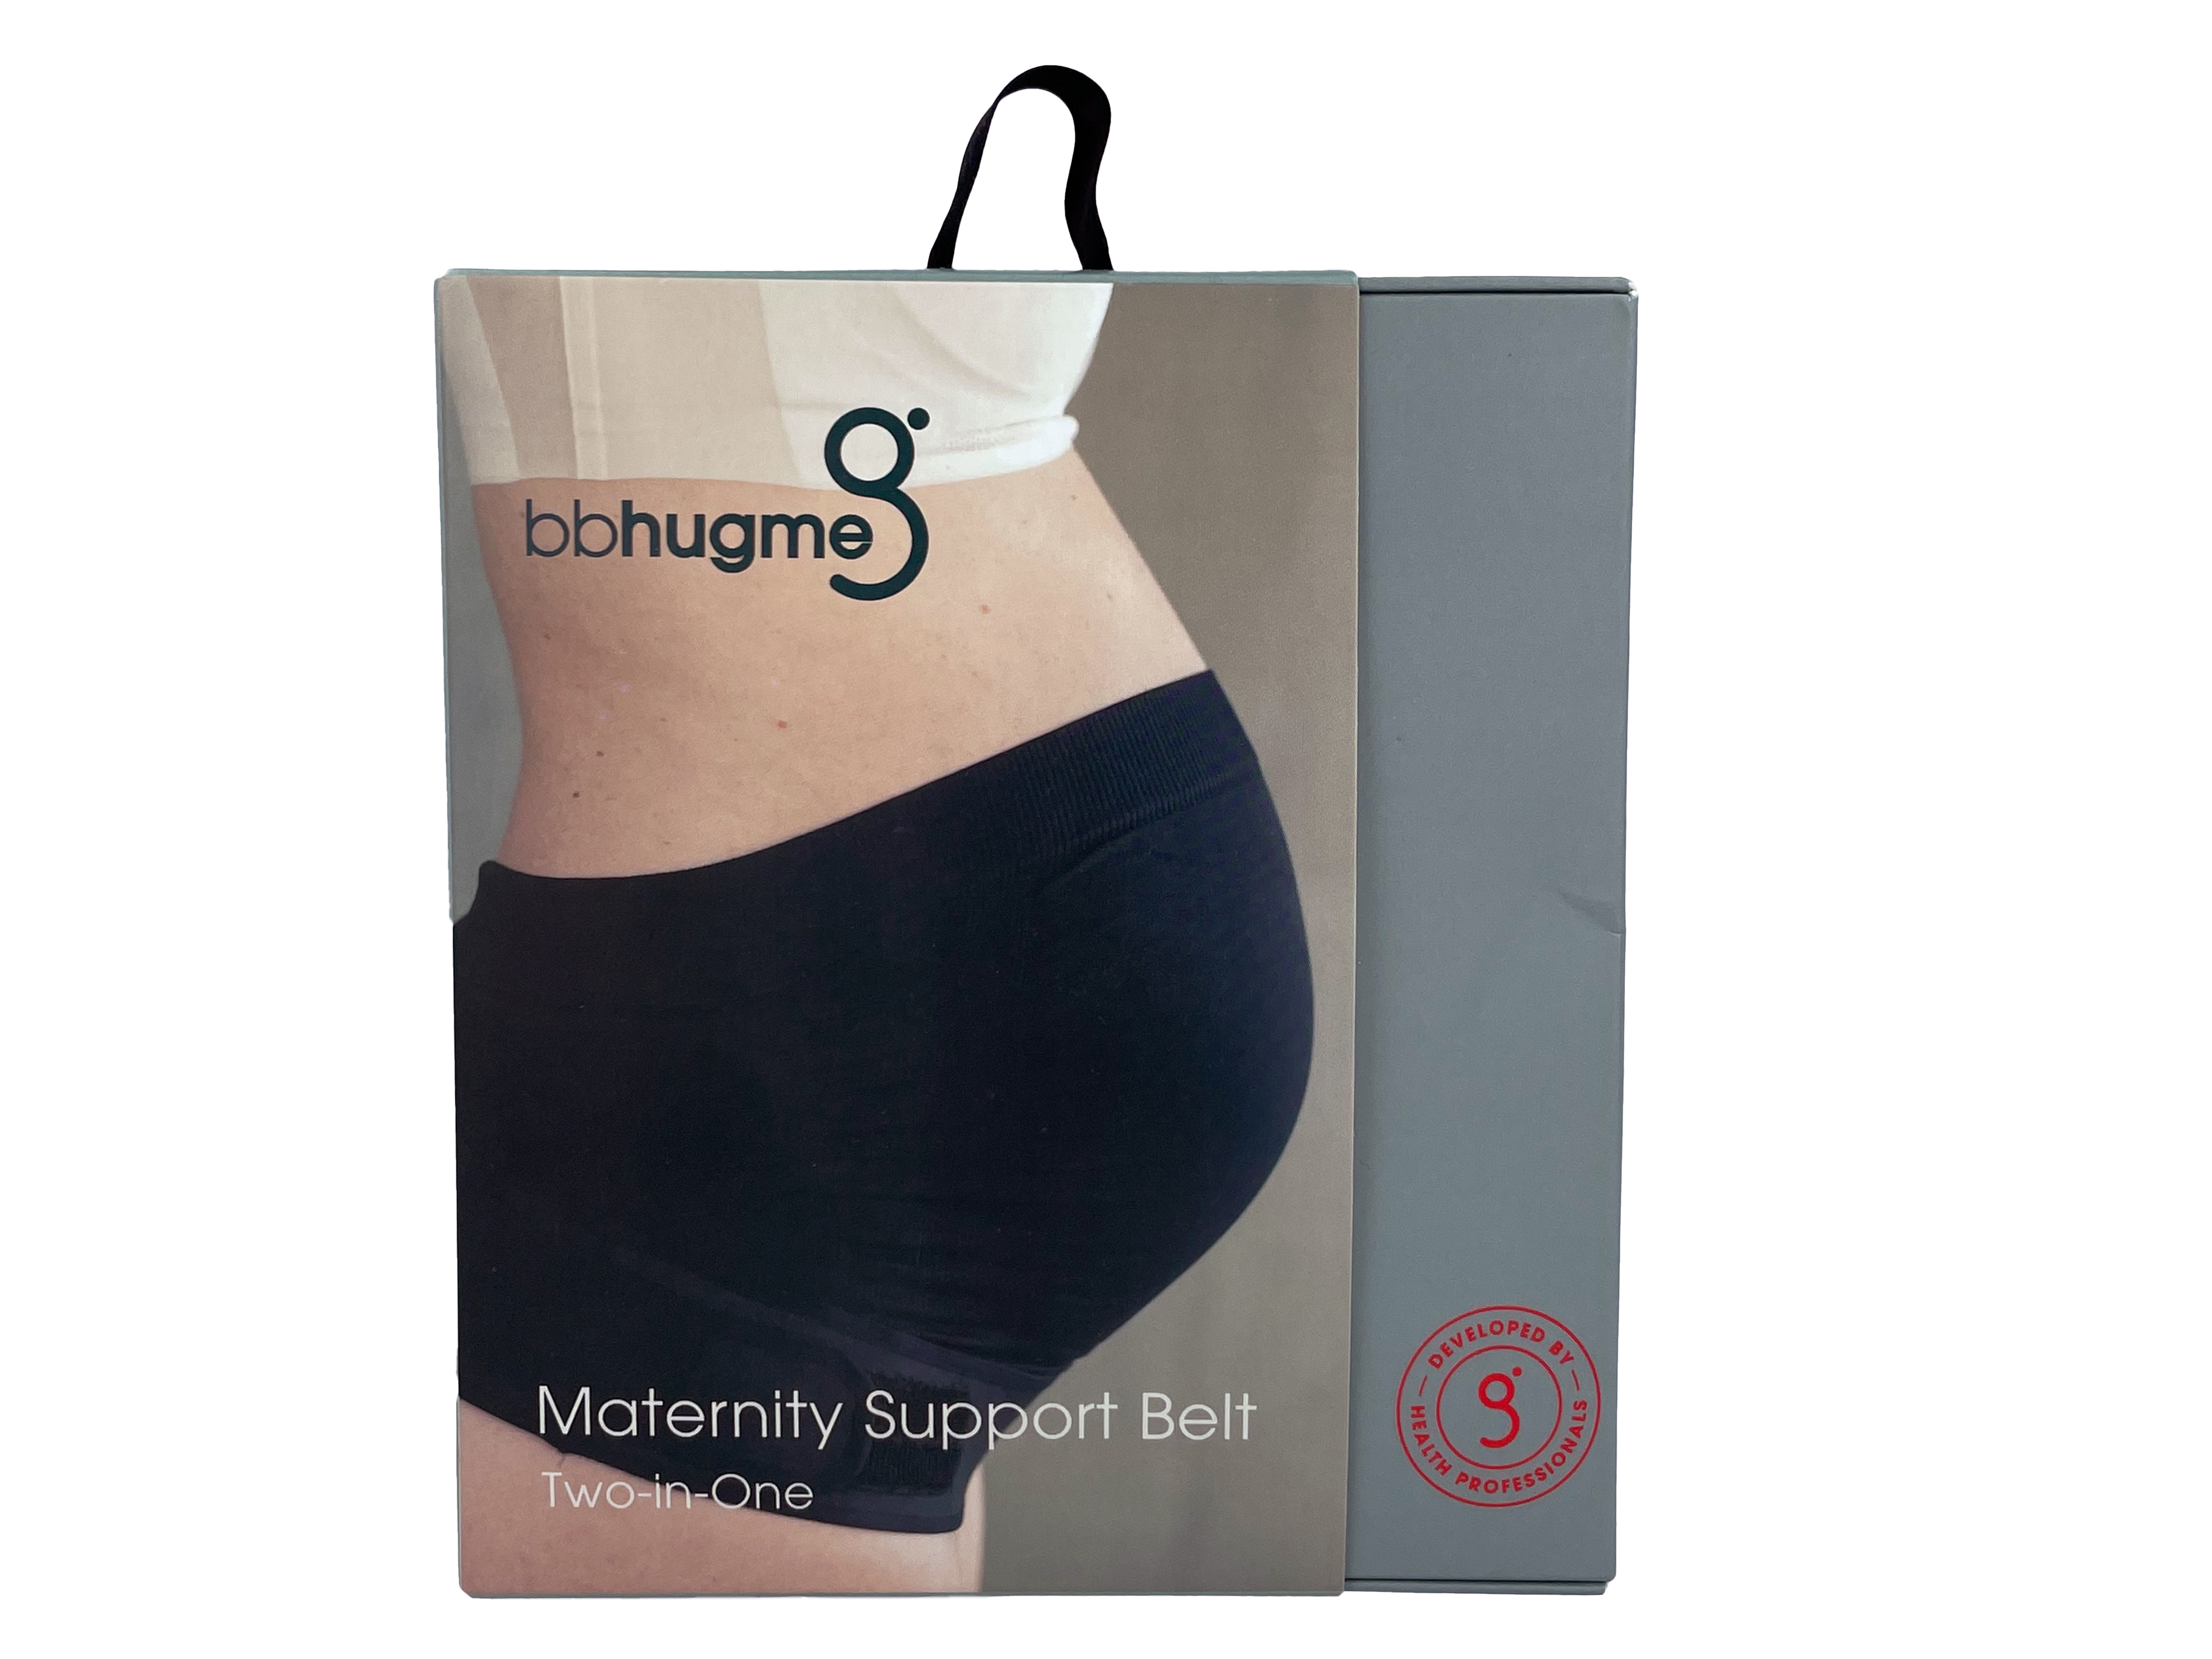 bbhugme Maternity Support Belt Black, L/XL, 1 stk.